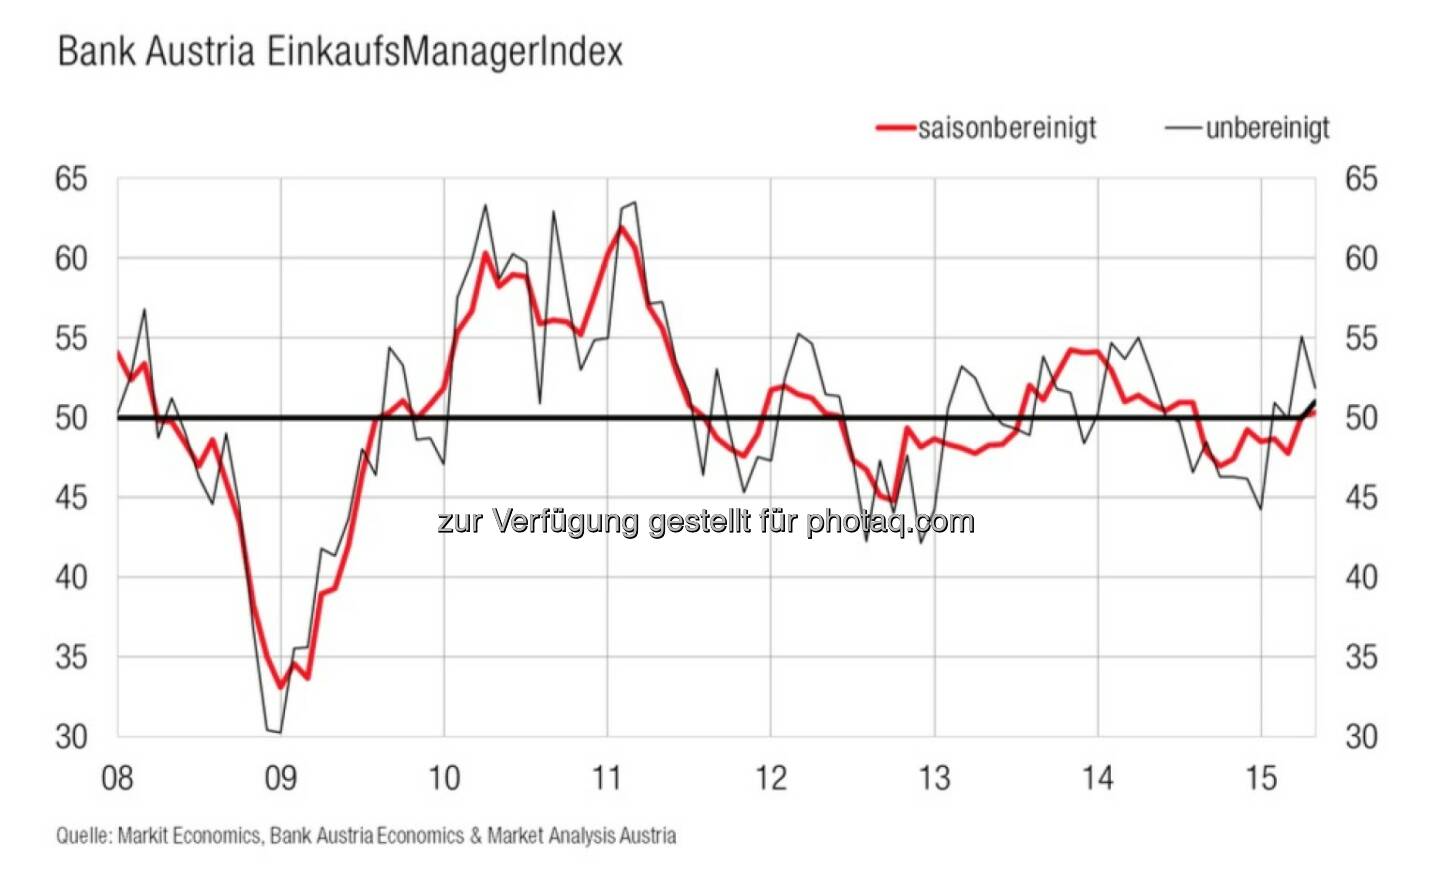 Bank Austria EinkaufsManagerIndex im Mai - Österreichs Industrie hält ihren moderaten Wachstumskurs, zweiten Monat in Folge im Wachstumsbereich (Bild: Bank Austria)